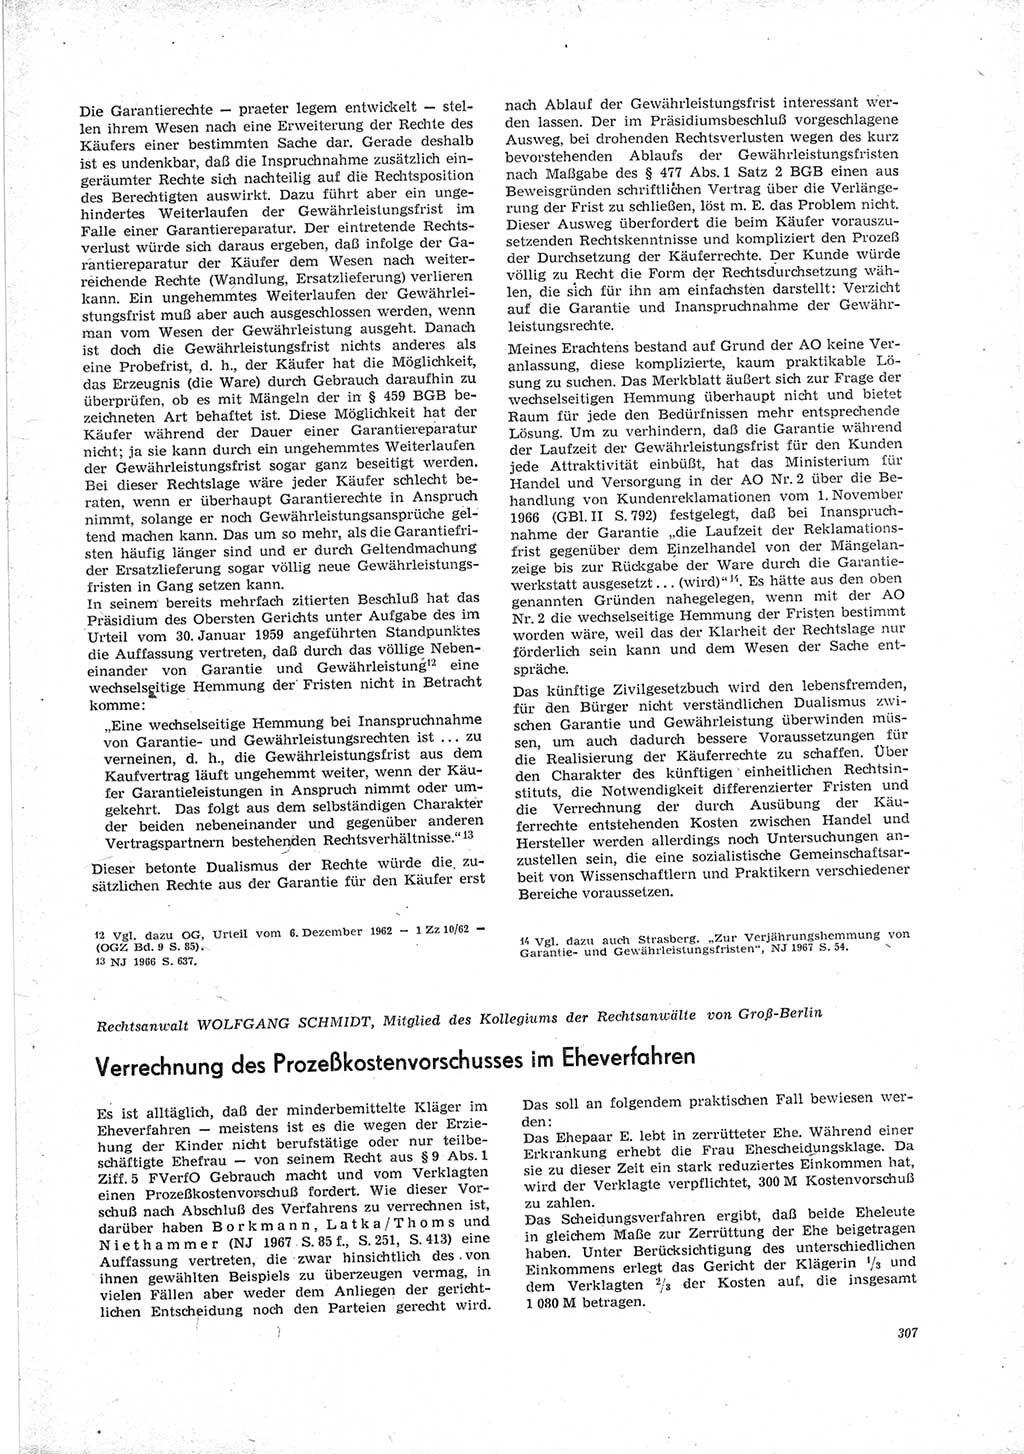 Neue Justiz (NJ), Zeitschrift für Recht und Rechtswissenschaft [Deutsche Demokratische Republik (DDR)], 23. Jahrgang 1969, Seite 307 (NJ DDR 1969, S. 307)